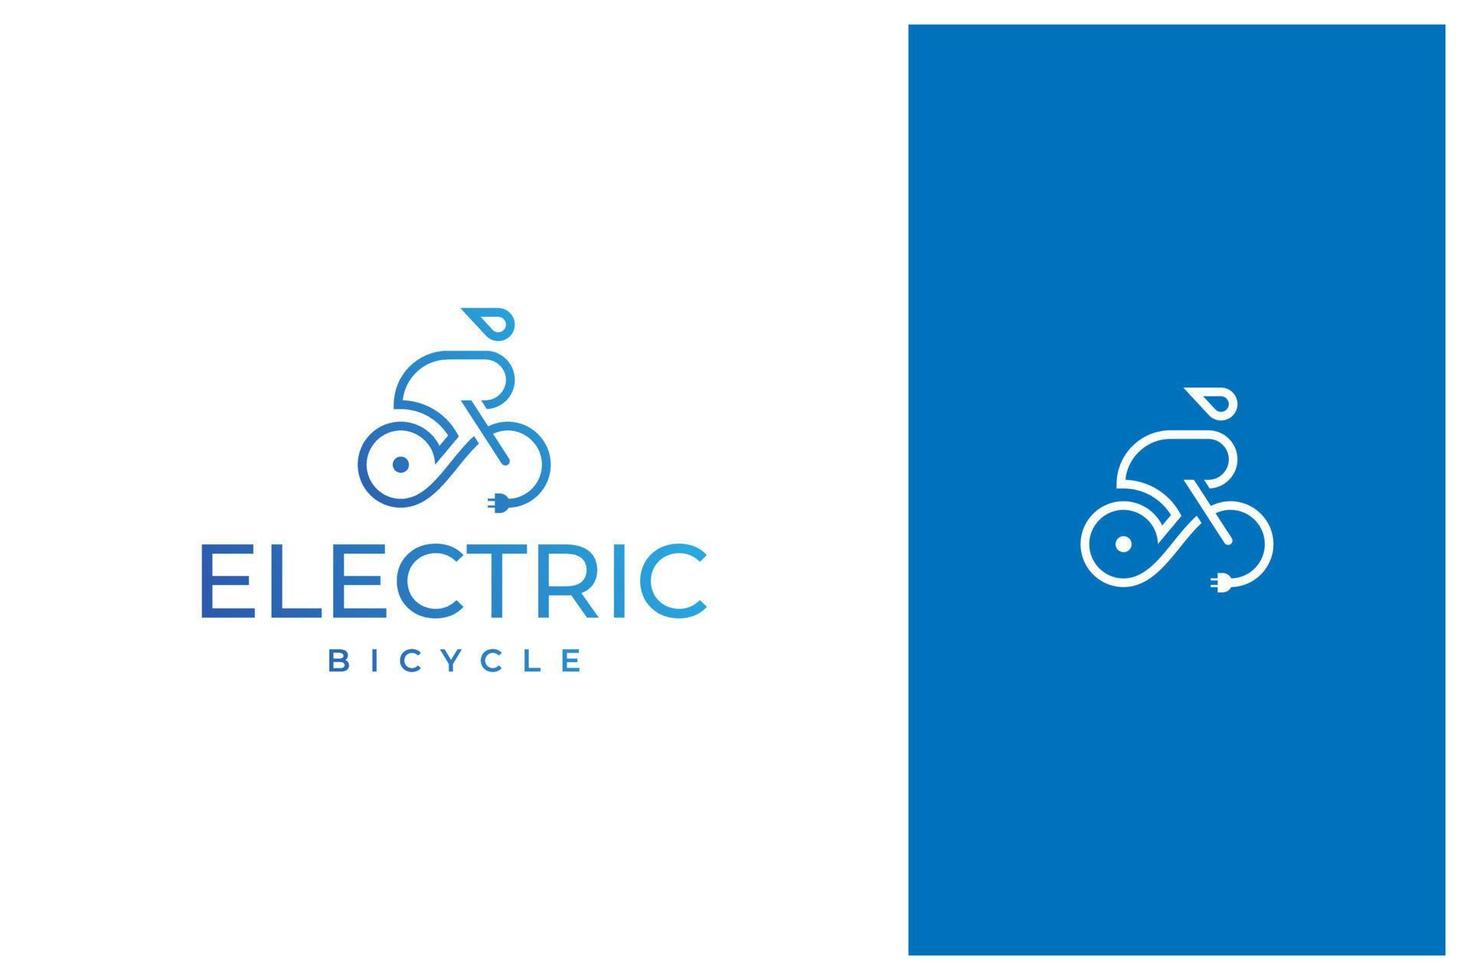 bicicleta eléctrica simple y moderna, bicicleta, diseño de logotipo de vector de bicicleta eléctrica en contorno, estilo de arte de línea